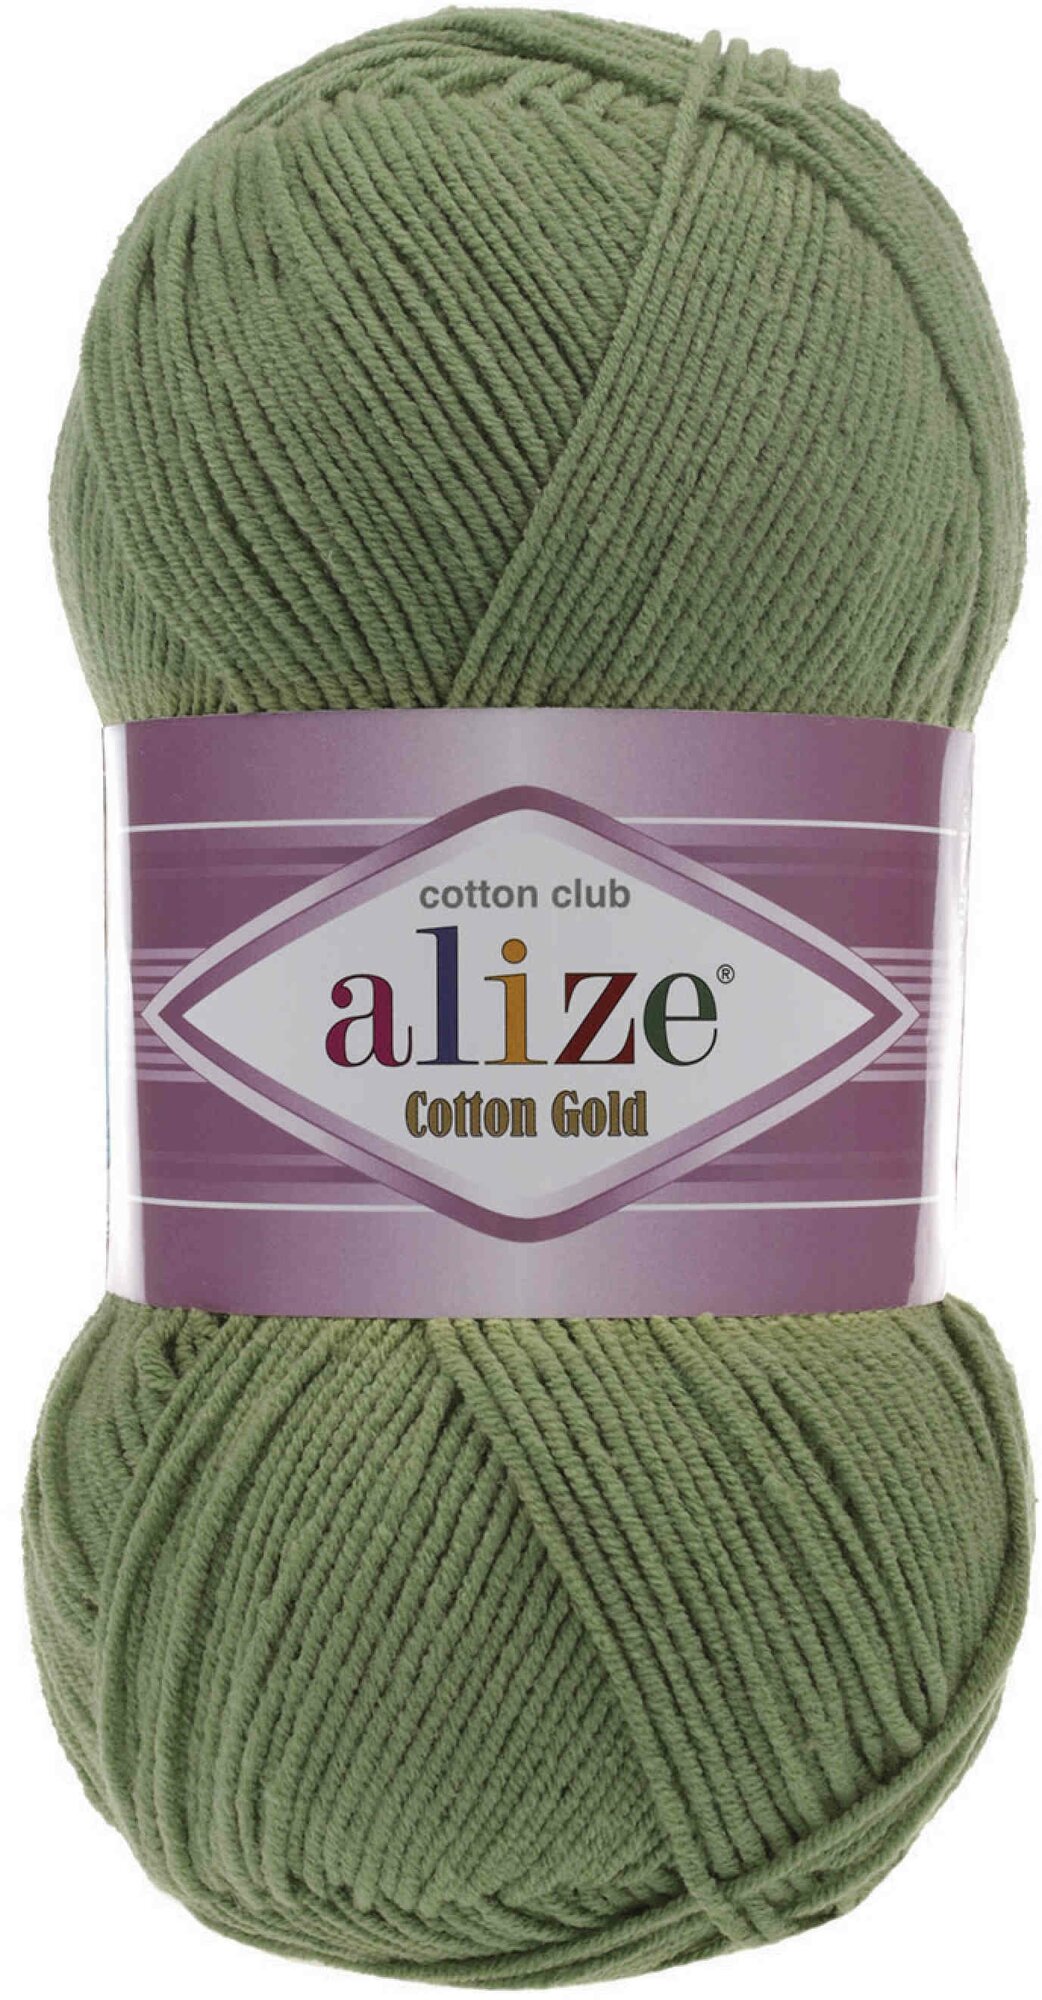 Пряжа Alize Cotton Gold зеленая черепаха (485), 55%хлопок/45%акрил, 330м, 100г, 3шт